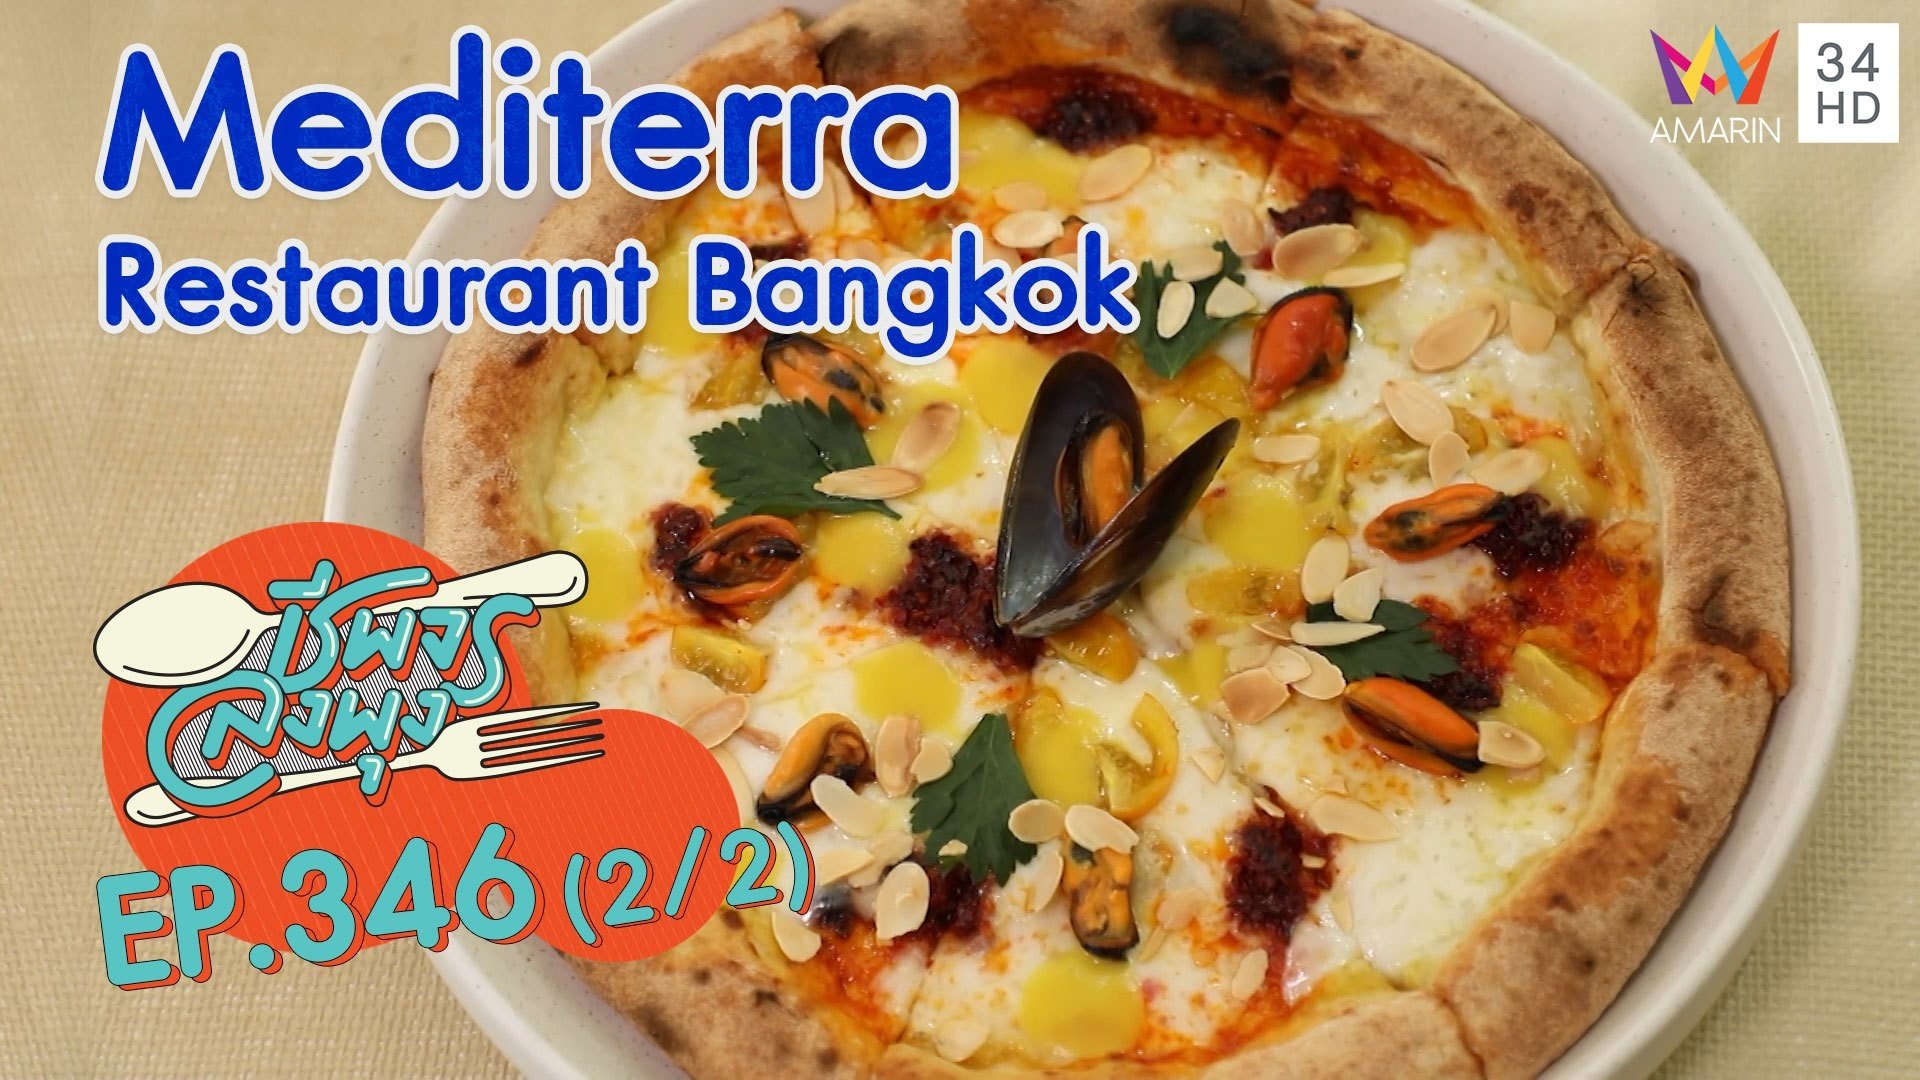 อาหารอิตาเลียนจัดเต็ม @ ร้าน Mediterra Restaurant Bangkok | ชีพจรลงพุง | 28 พ.ย. 64 (2/2) | AMARIN TVHD34